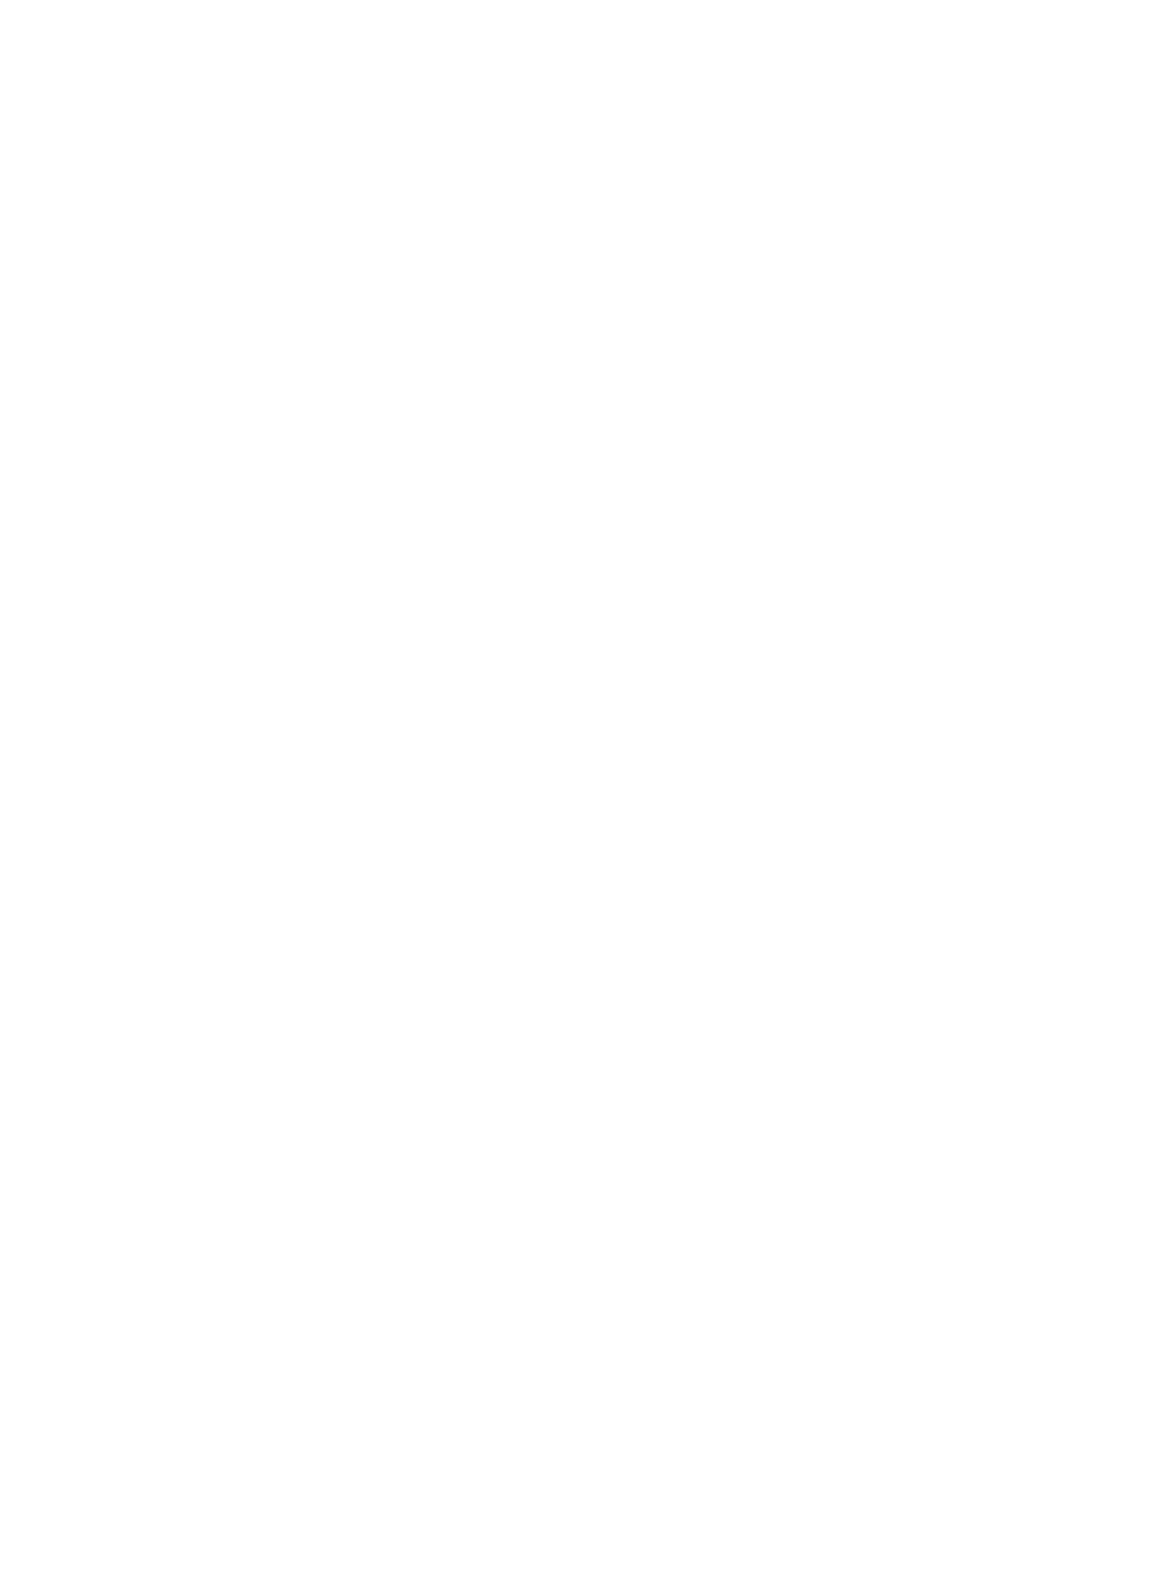 Fluent logo for dark backgrounds (transparent PNG)